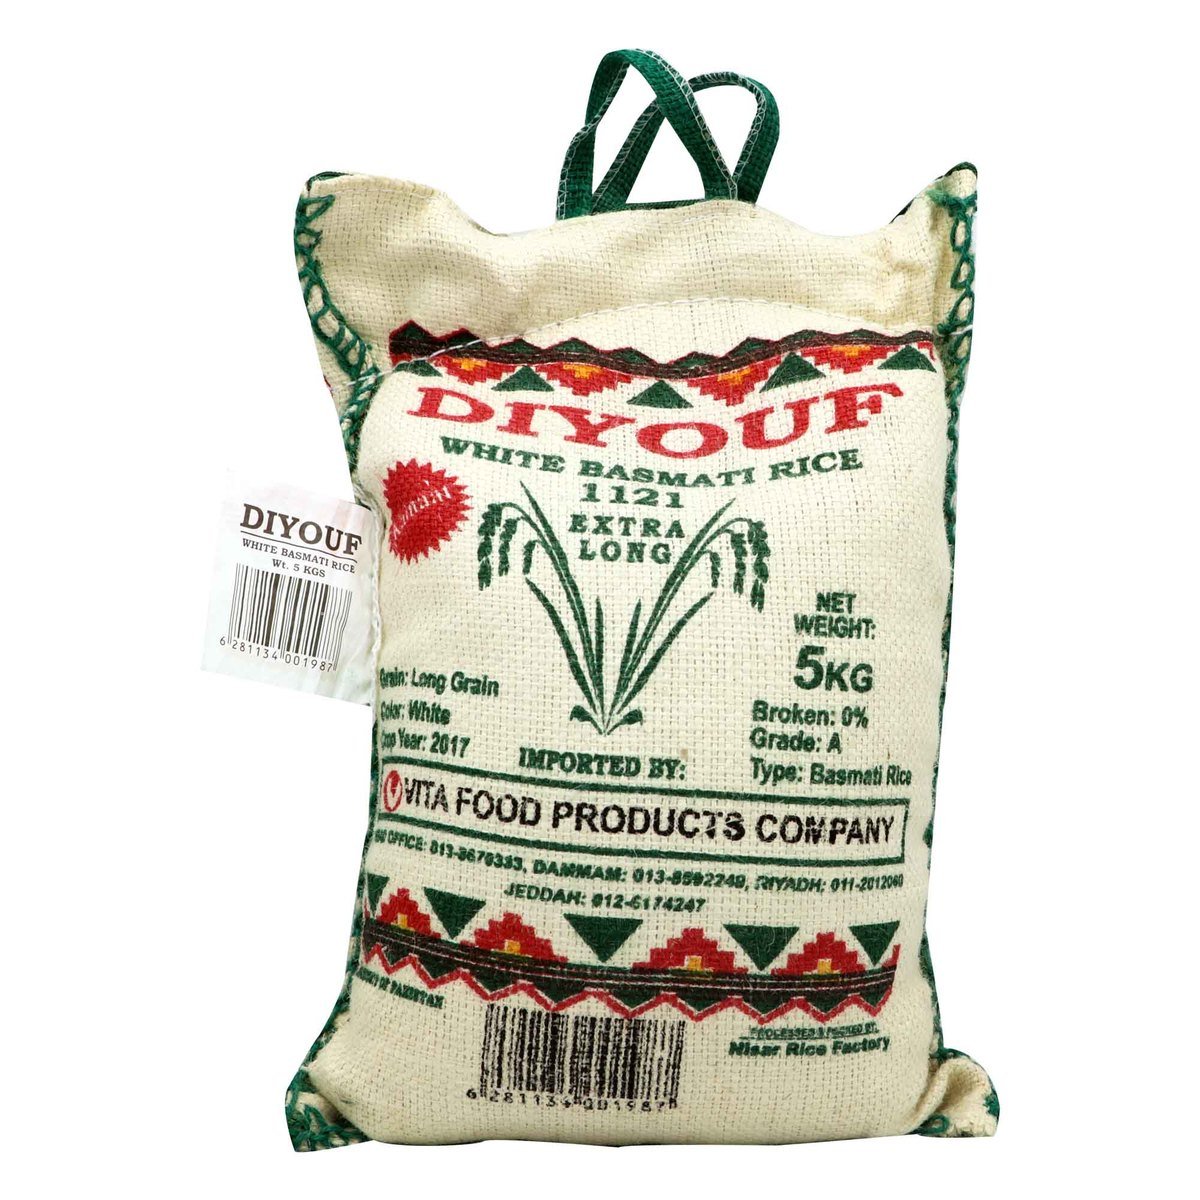 Diyouf White Basmati Rice Extra Long 5kg